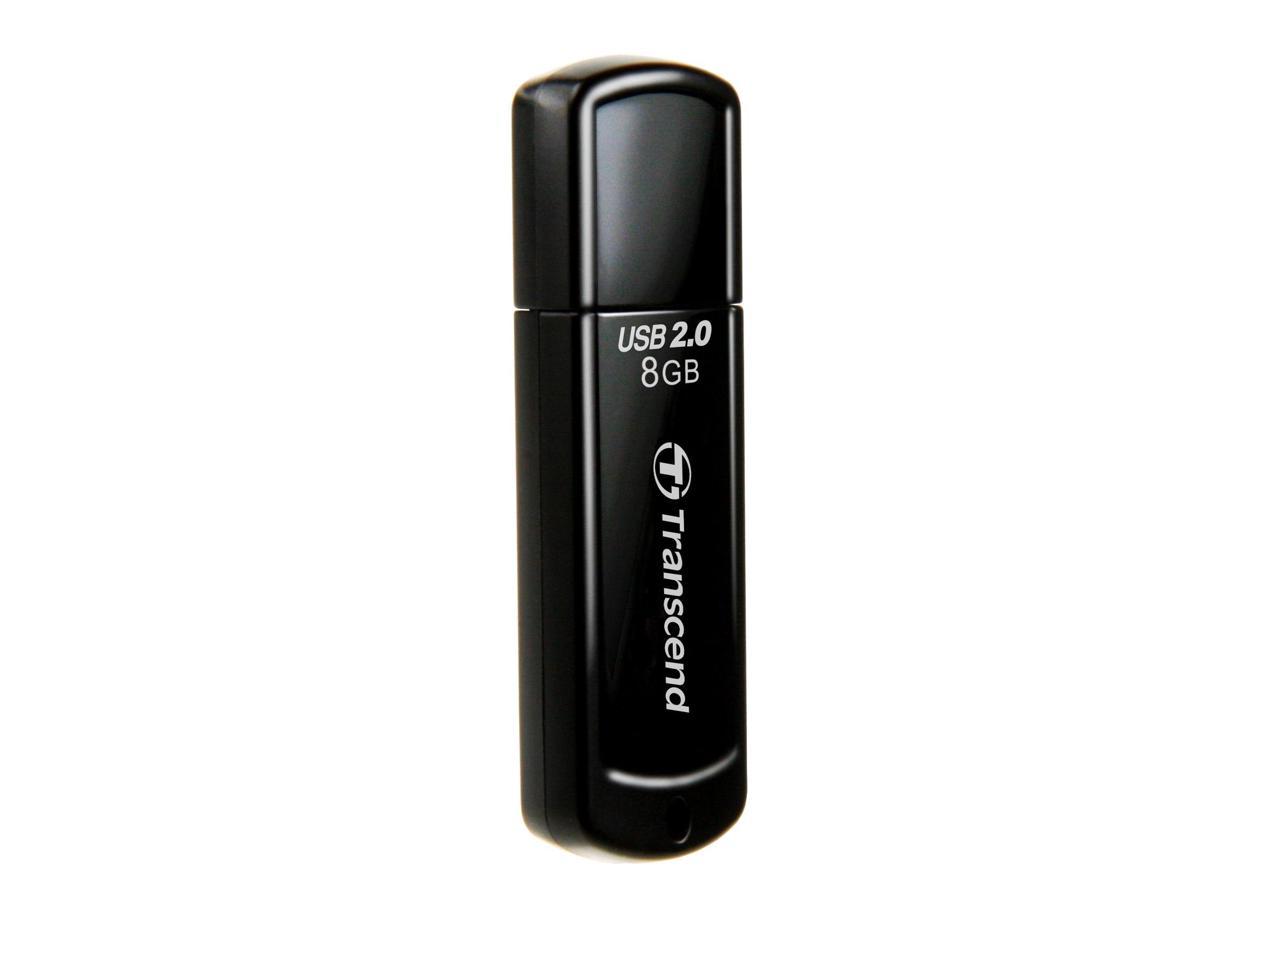 Transcend JetFlash 350 8 GB USB 2.0 Flash Drive - Black - 1 Pack